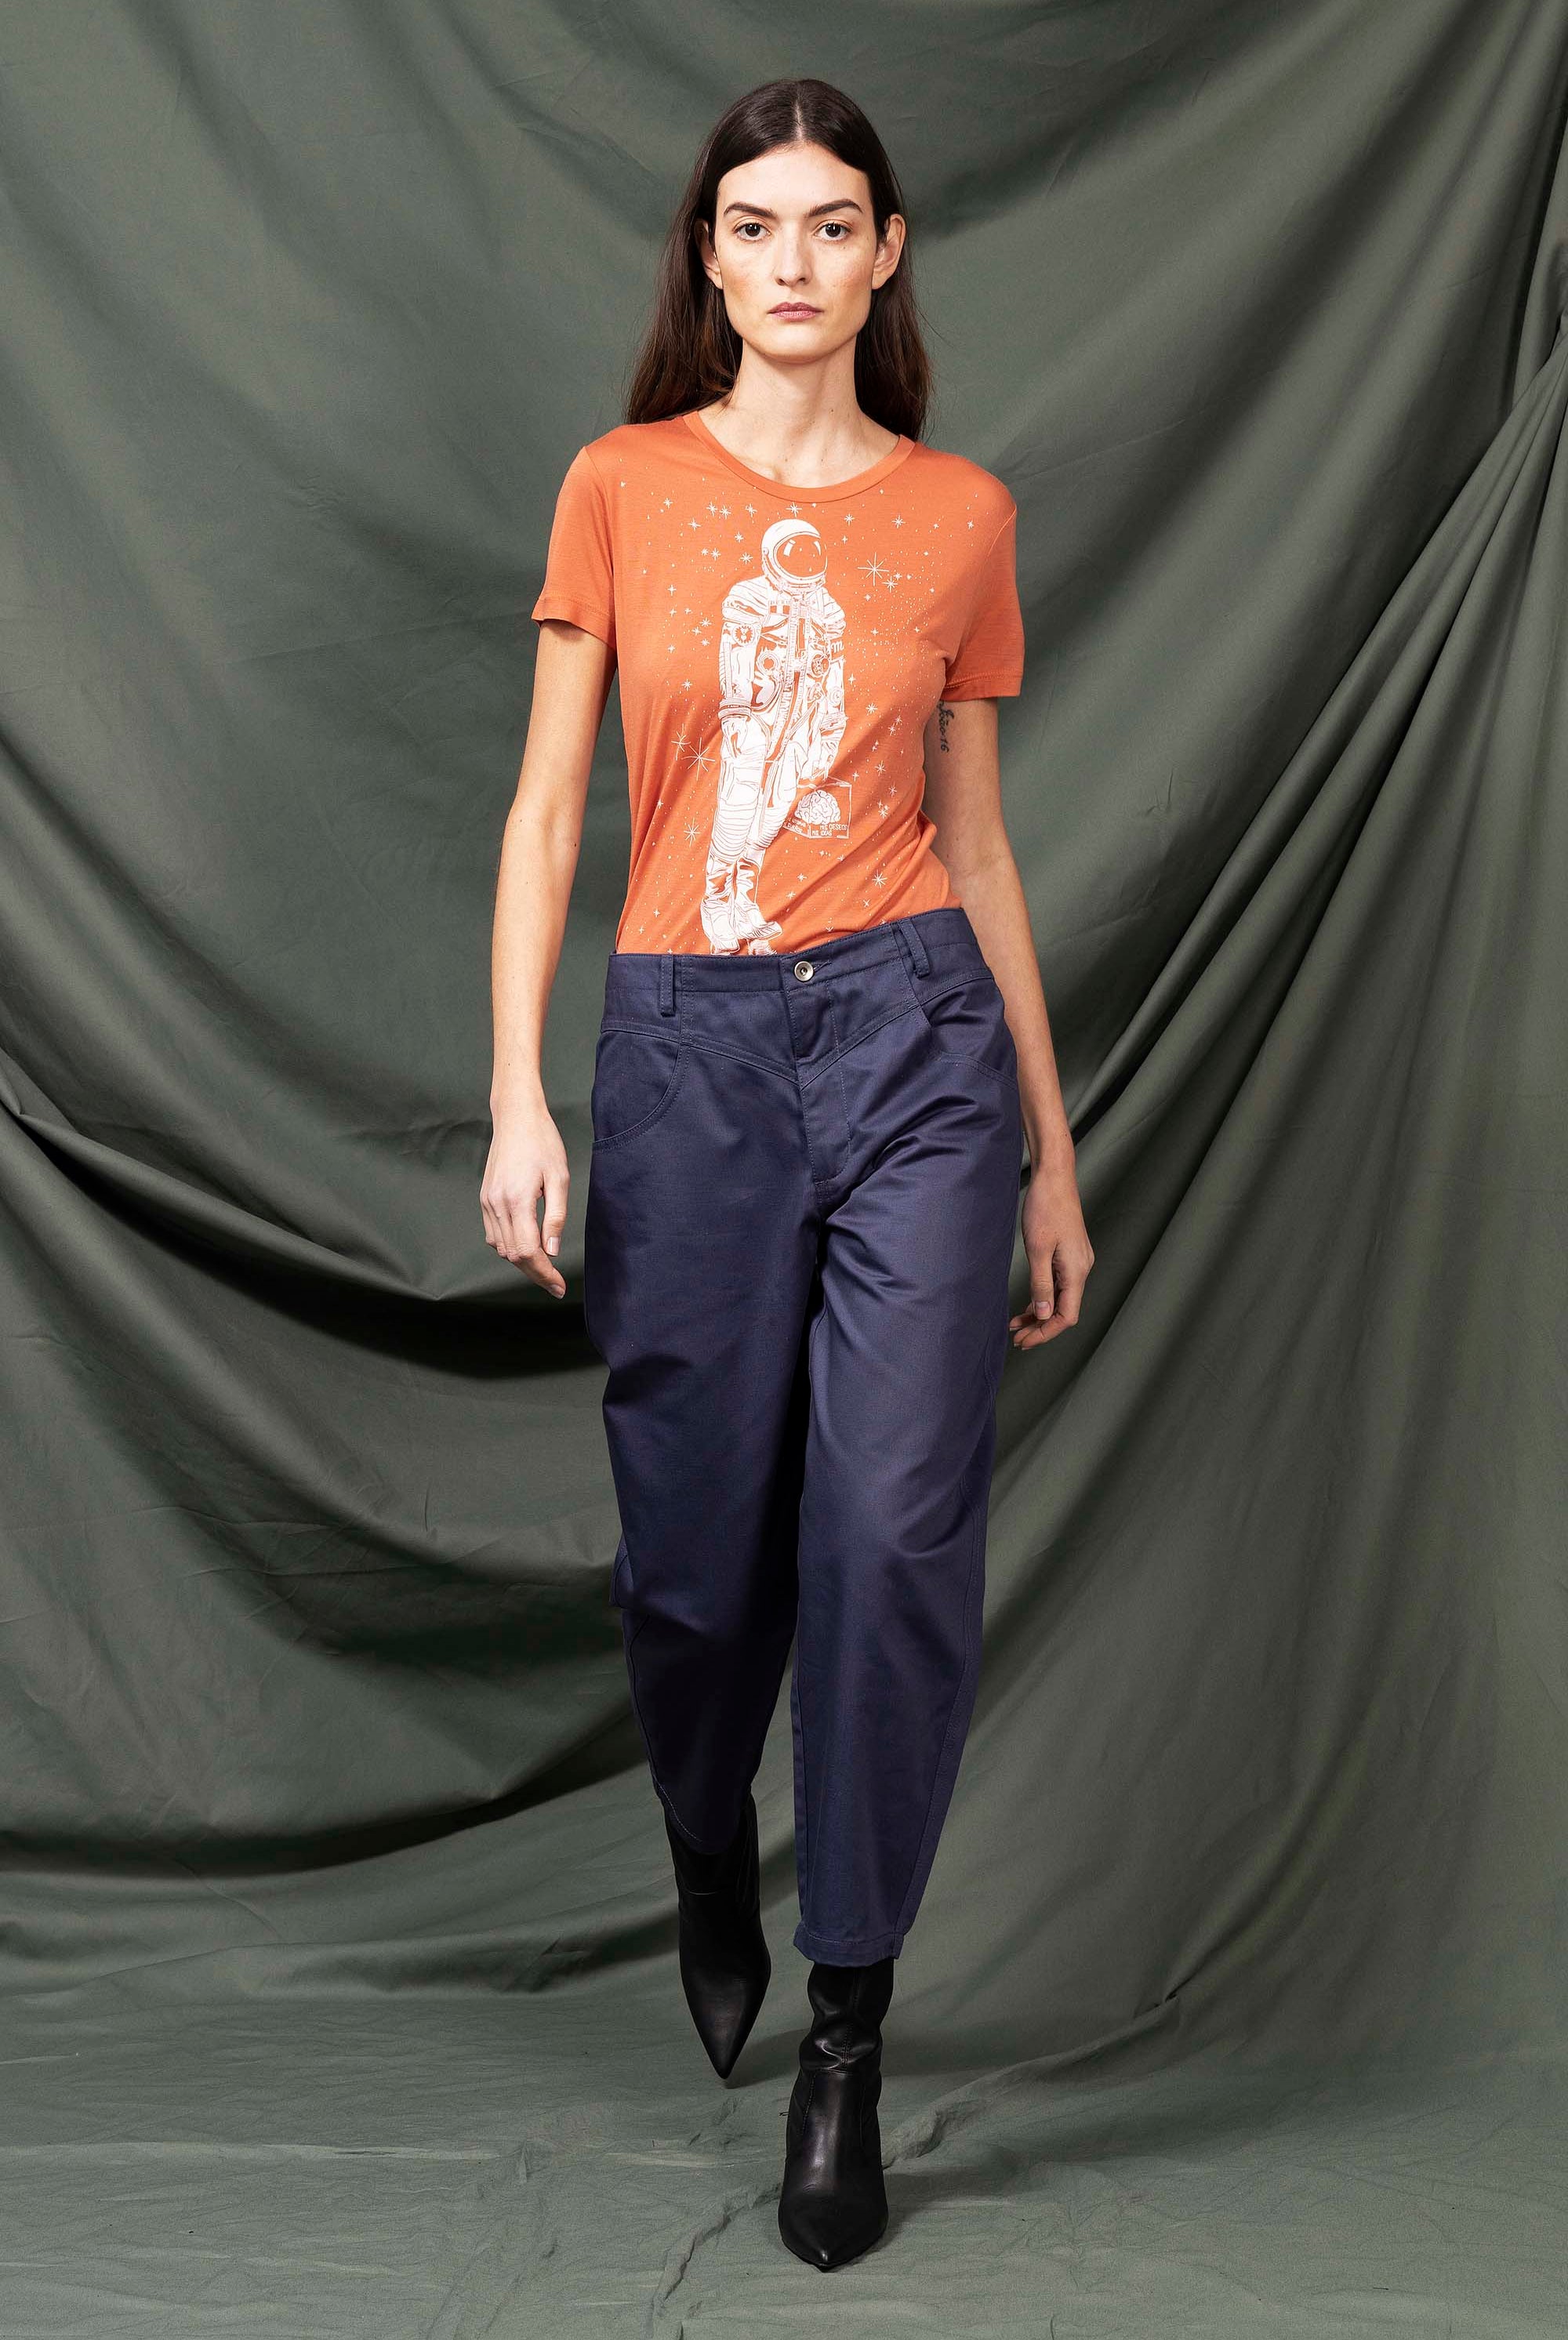 Pantalon Isabella Bleu de Prusse parfaite alternative aux jeans, les pantalons en coton Misericordia sont uniques et confortables